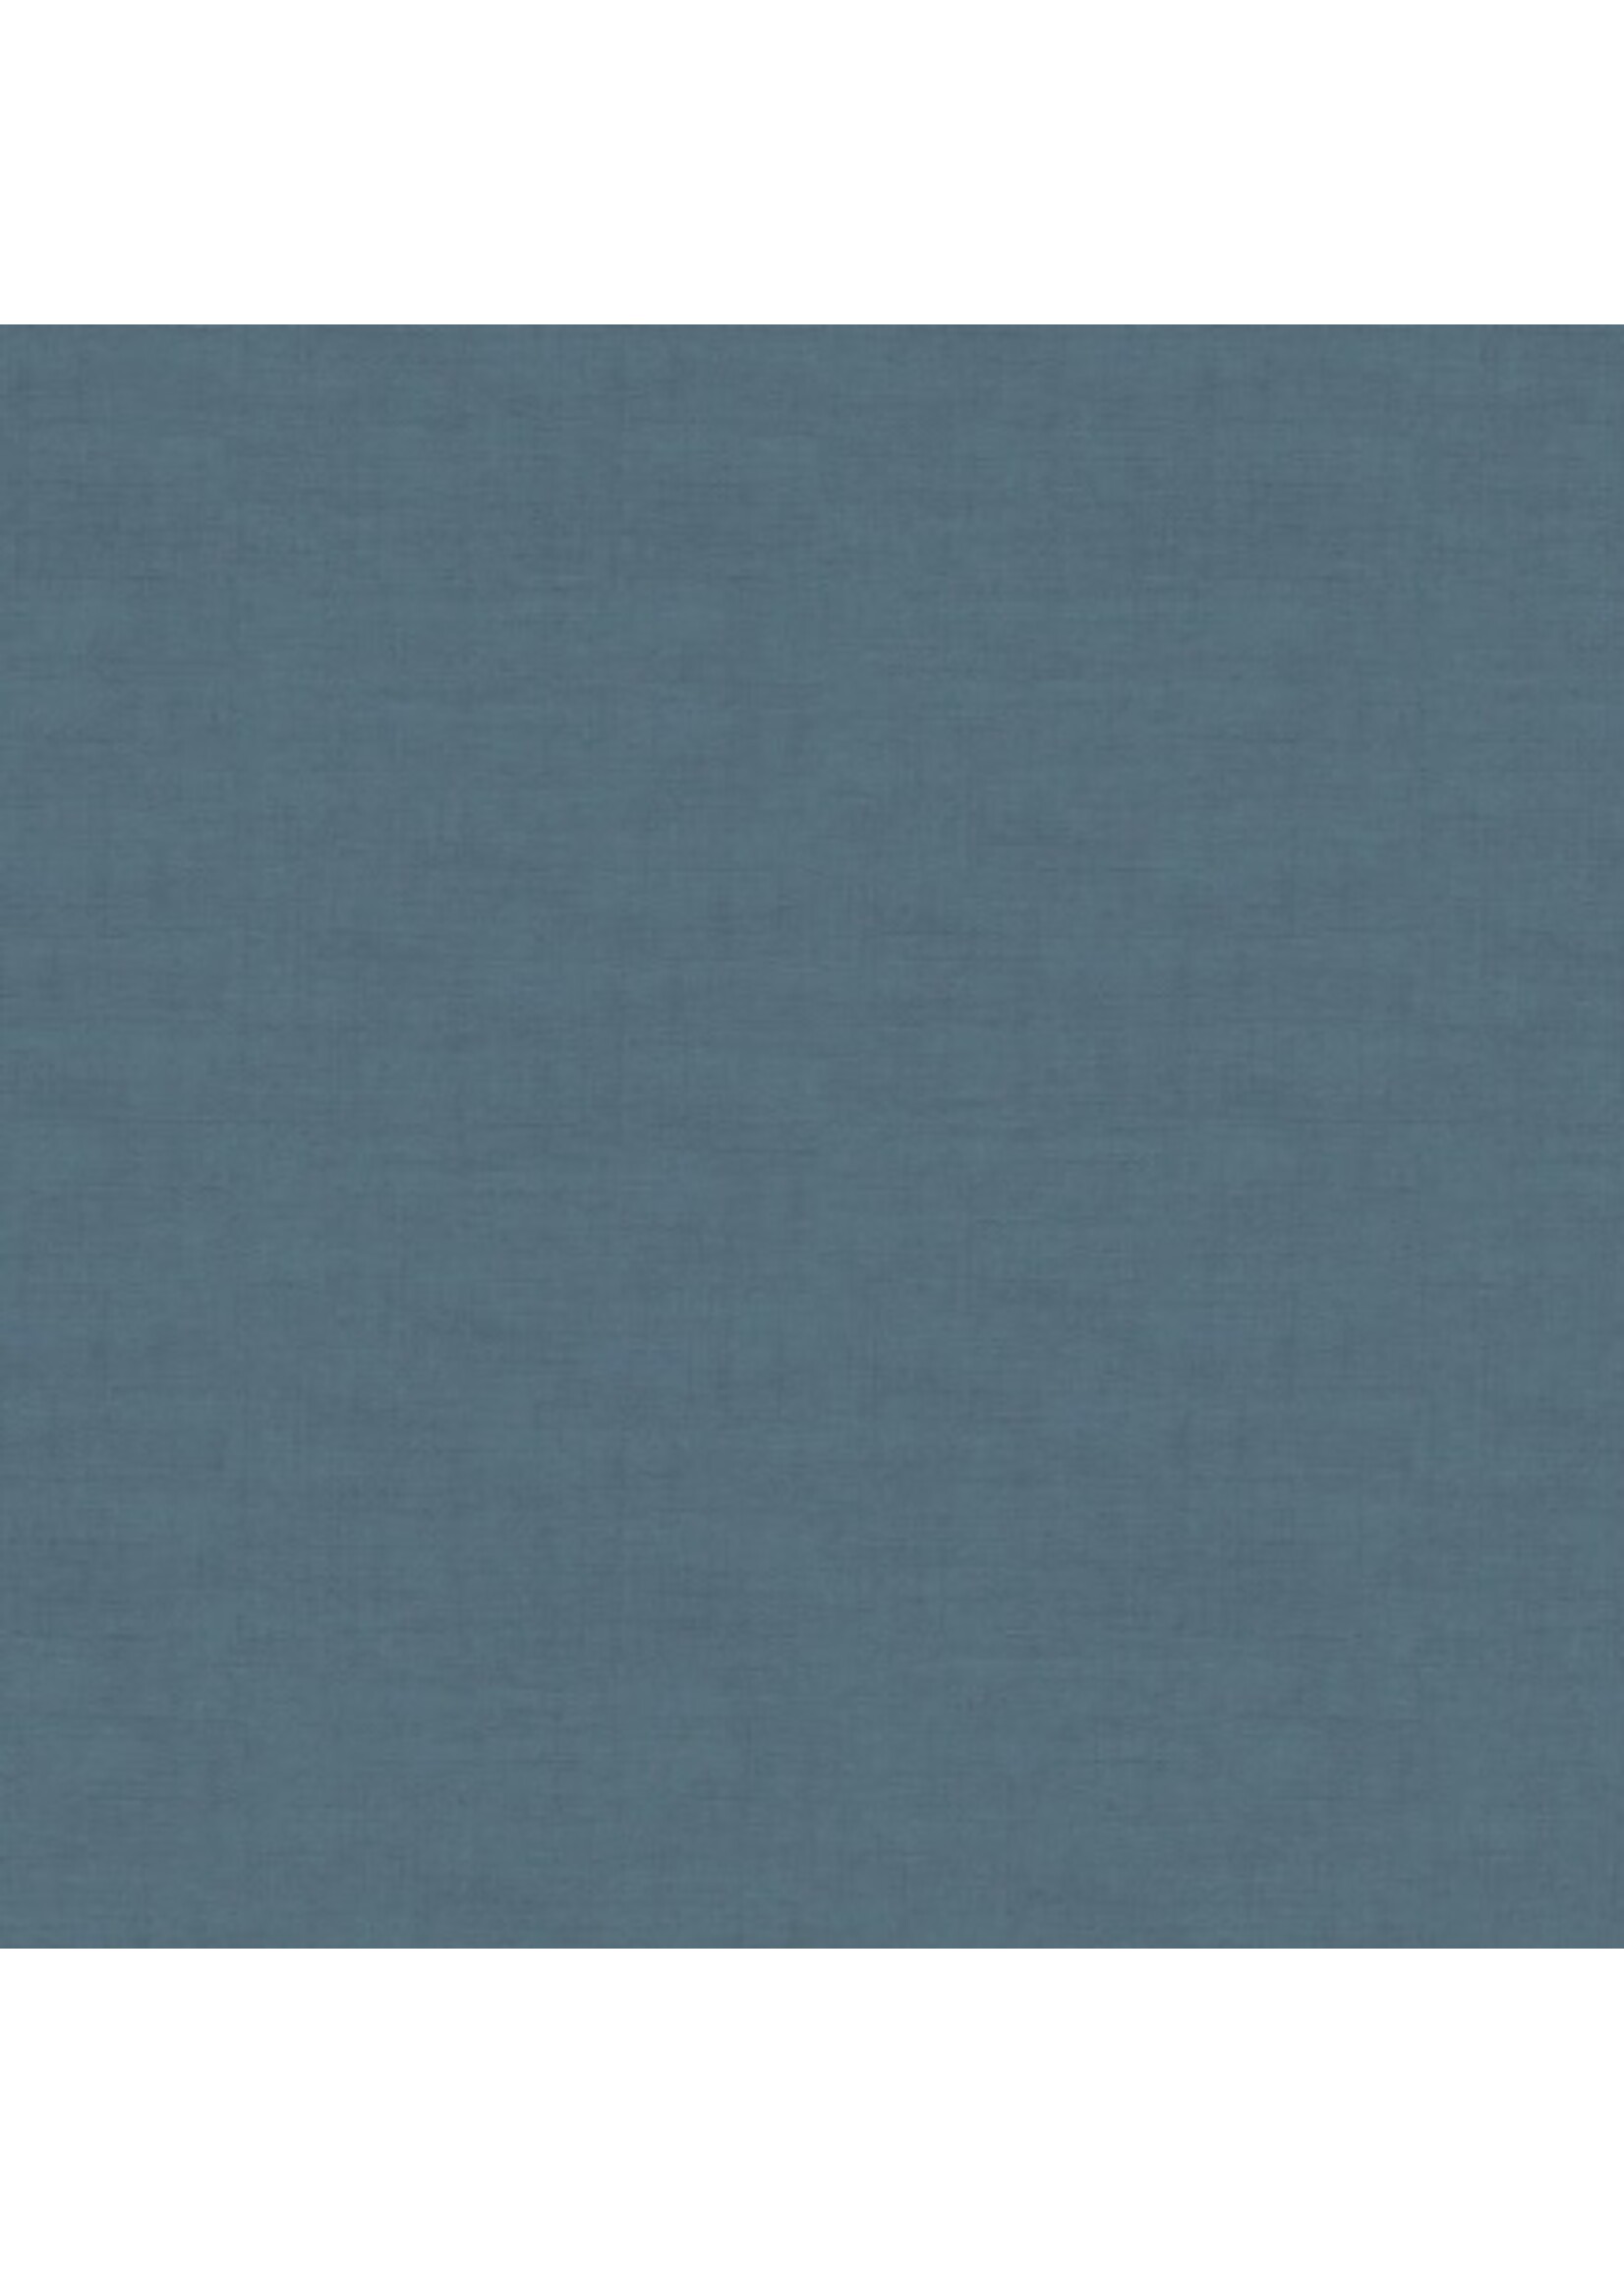 Makower Linen Texture - Denim - 1473B7